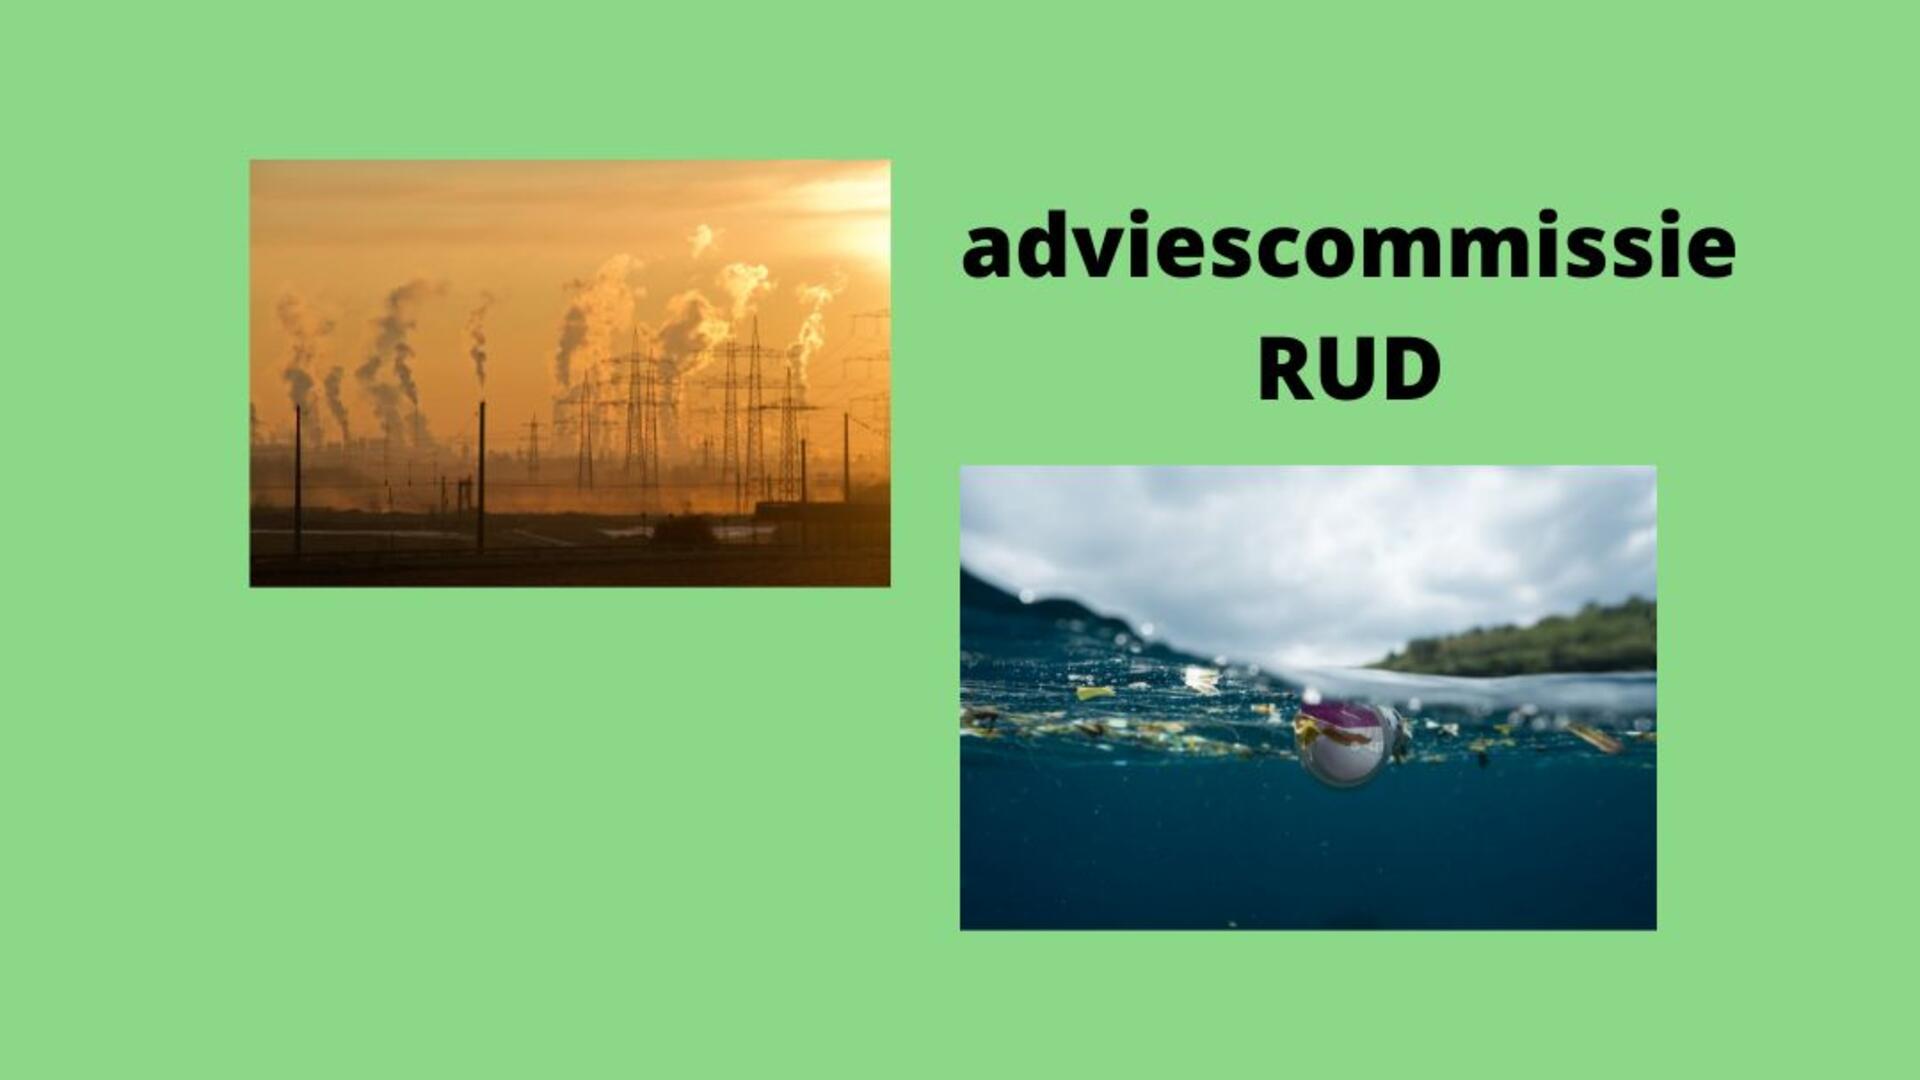 adviescommissie RUD